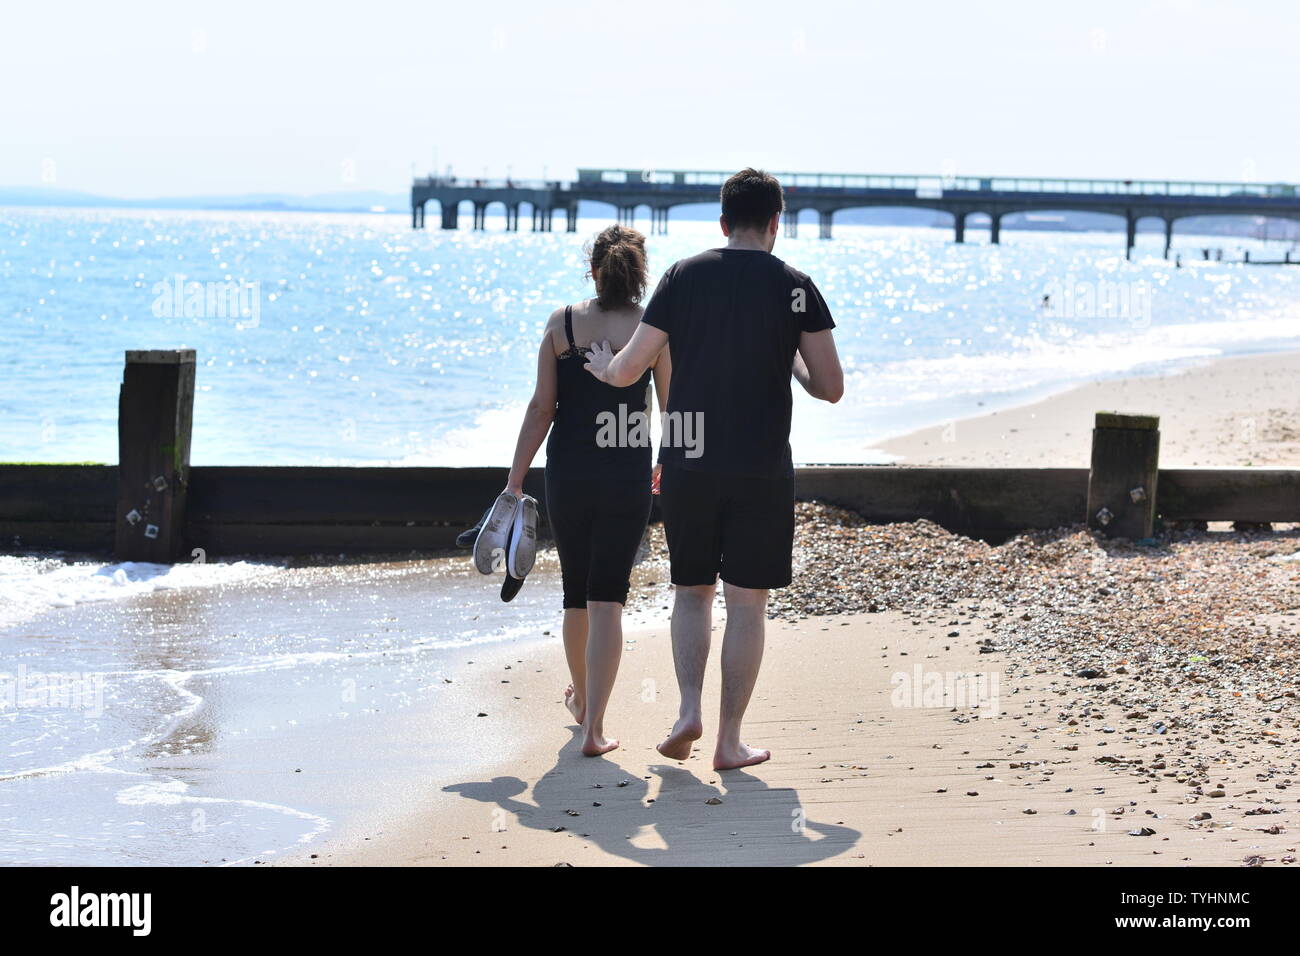 Pareja joven romántica caminando en la playa en verano con los zapatos quitados y tocando cariñosamente, Boscombe, Bournemouth, Dorset, Inglaterra, Reino Unido, junio de 2019 Foto de stock